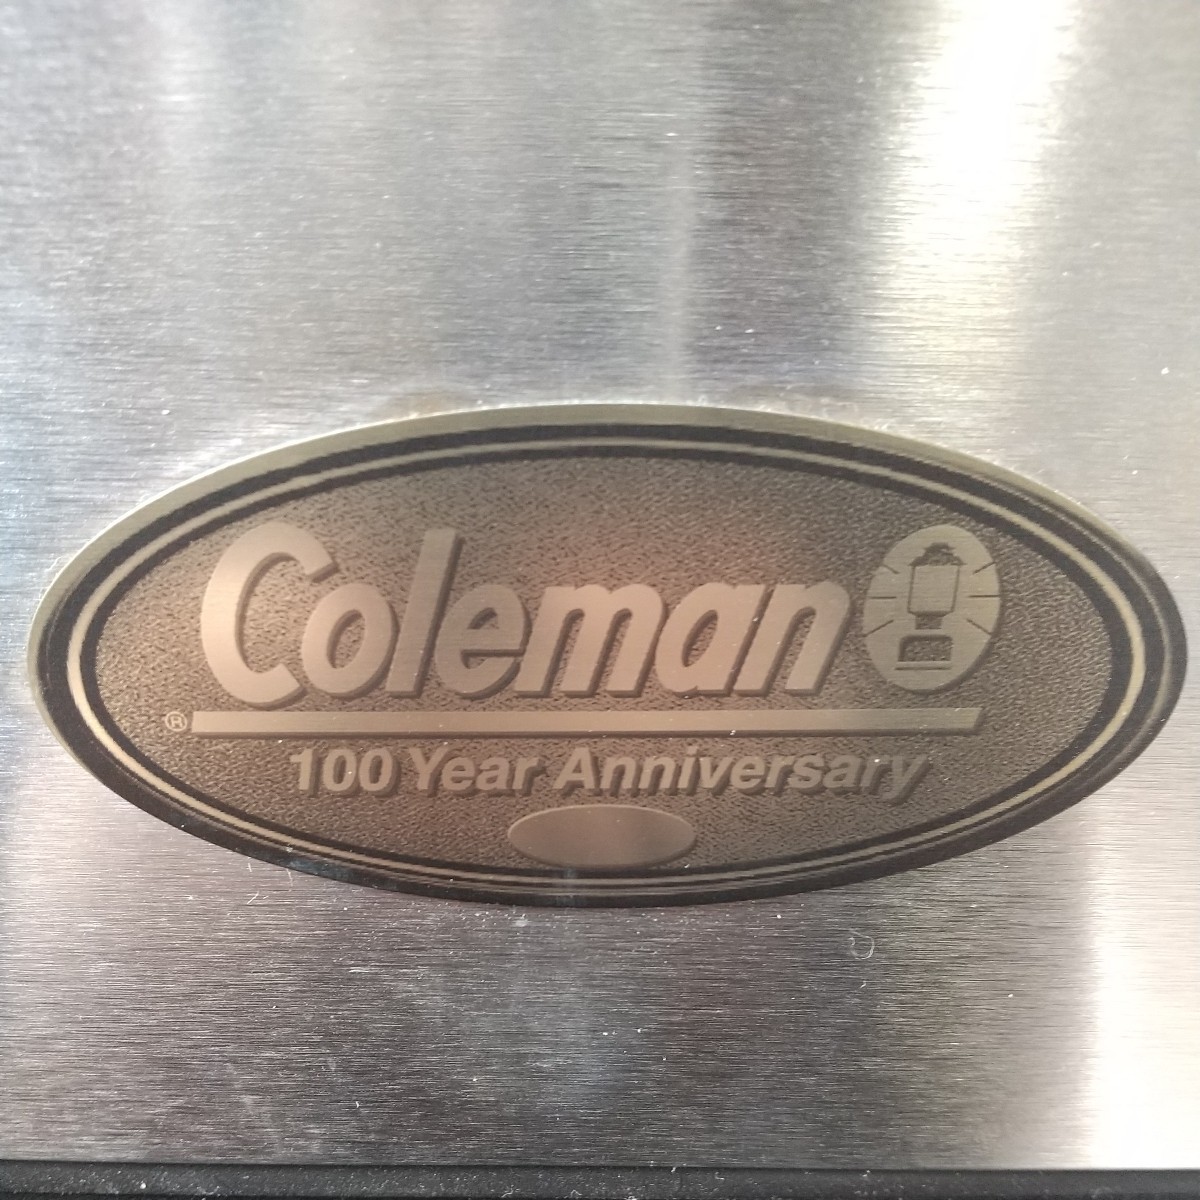 y030401t Coleman Coleman 100 anniversary commemoration ограничение 6155-707 примерно W60×D41×H40cm steel ремень cooler-box кемпинг уличный 